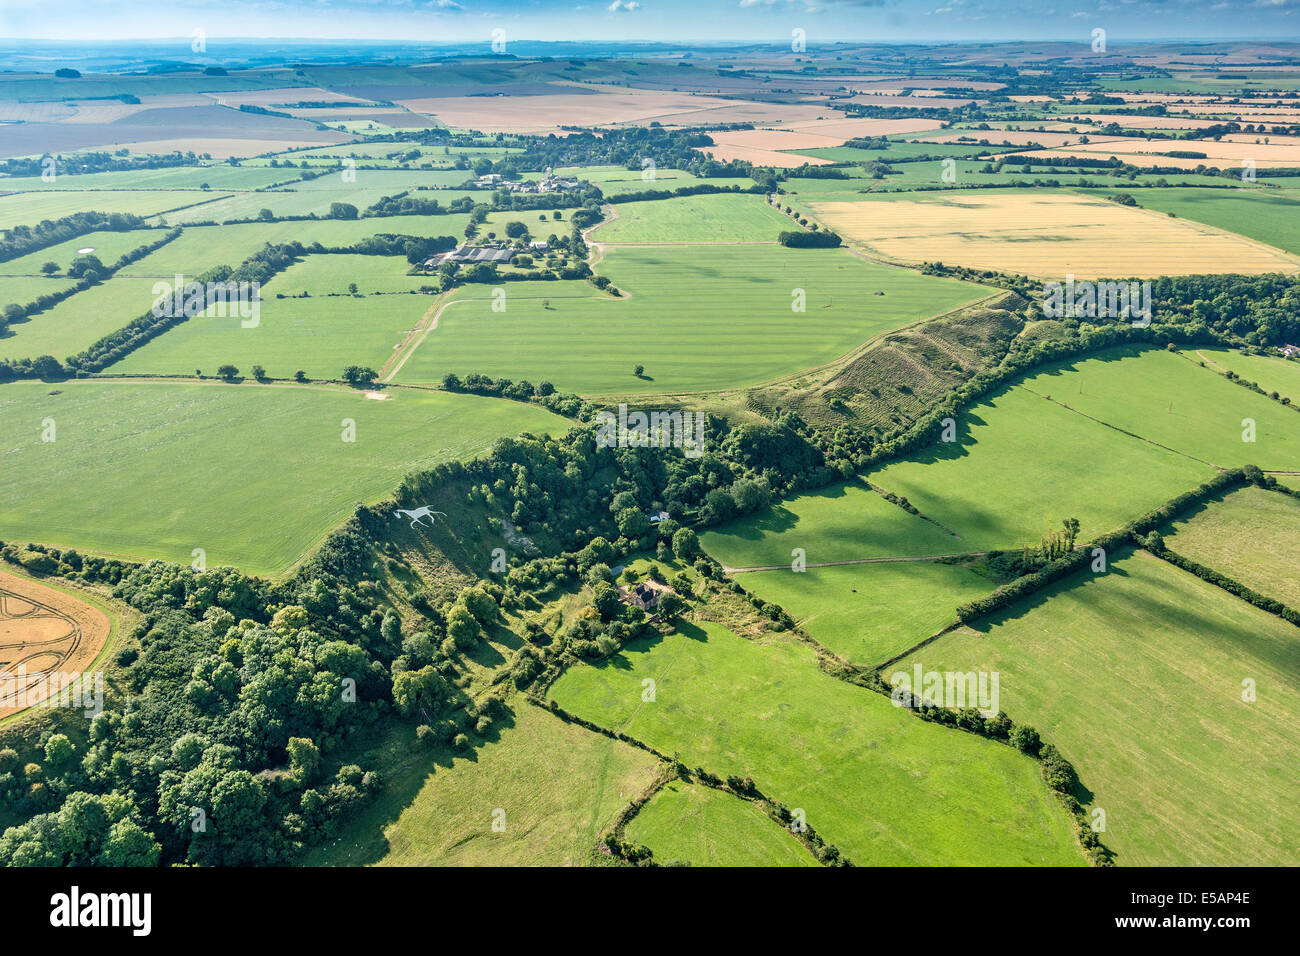 Vista aerea del Cavallo Bianco in grandi città o ampia Hinton, nr Royal Wootton Bassett, a sud di Swindon, Wiltshire, Regno Unito. JMH6170 Foto Stock